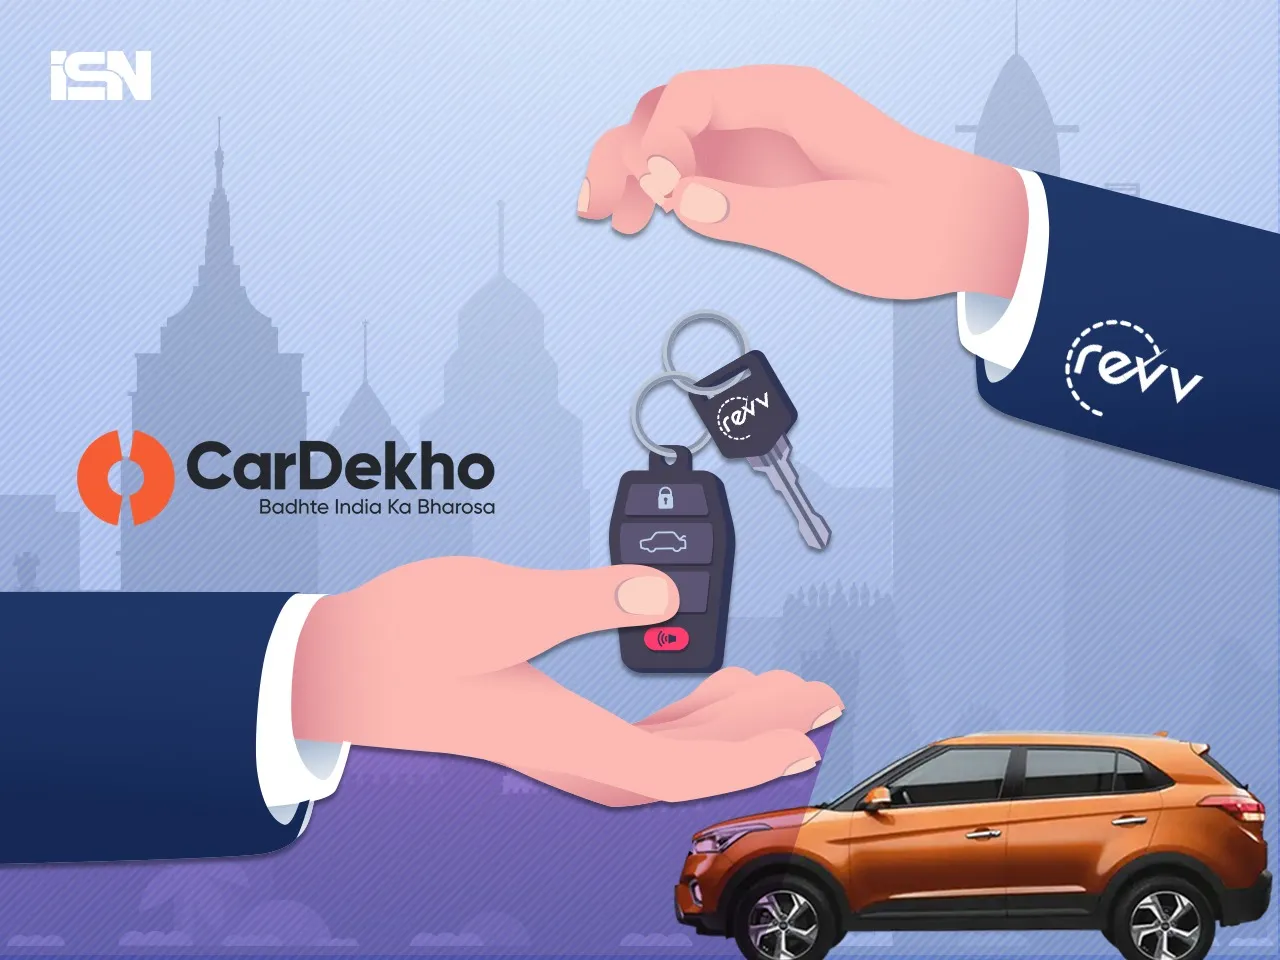  CarDekho acquires Revv